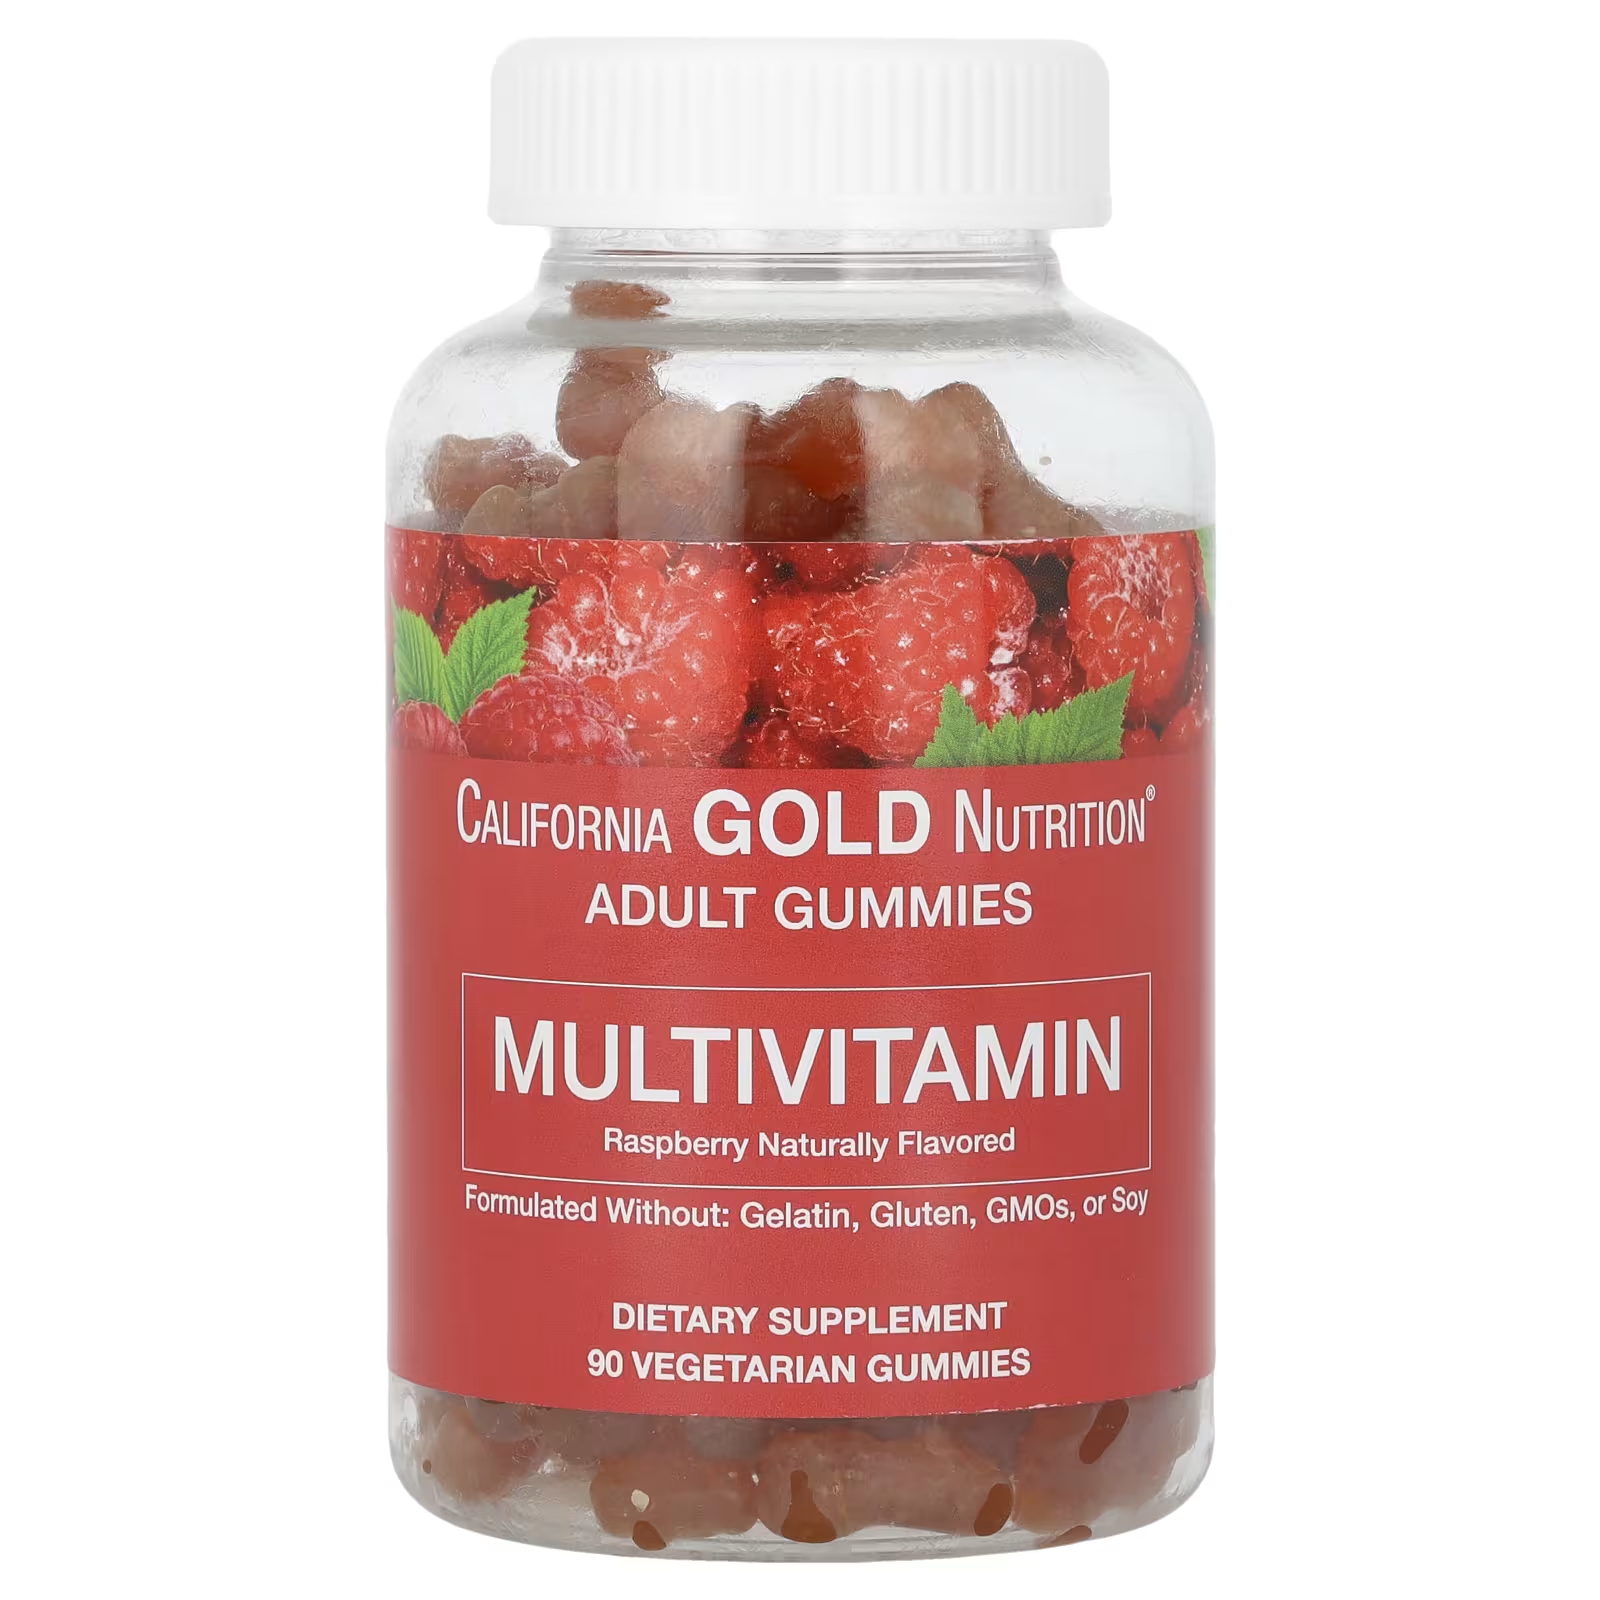 Мультивитаминные жевательные конфеты для взрослых с натуральным вкусом малины, 90 вегетарианских жевательных конфет California Gold Nutrition